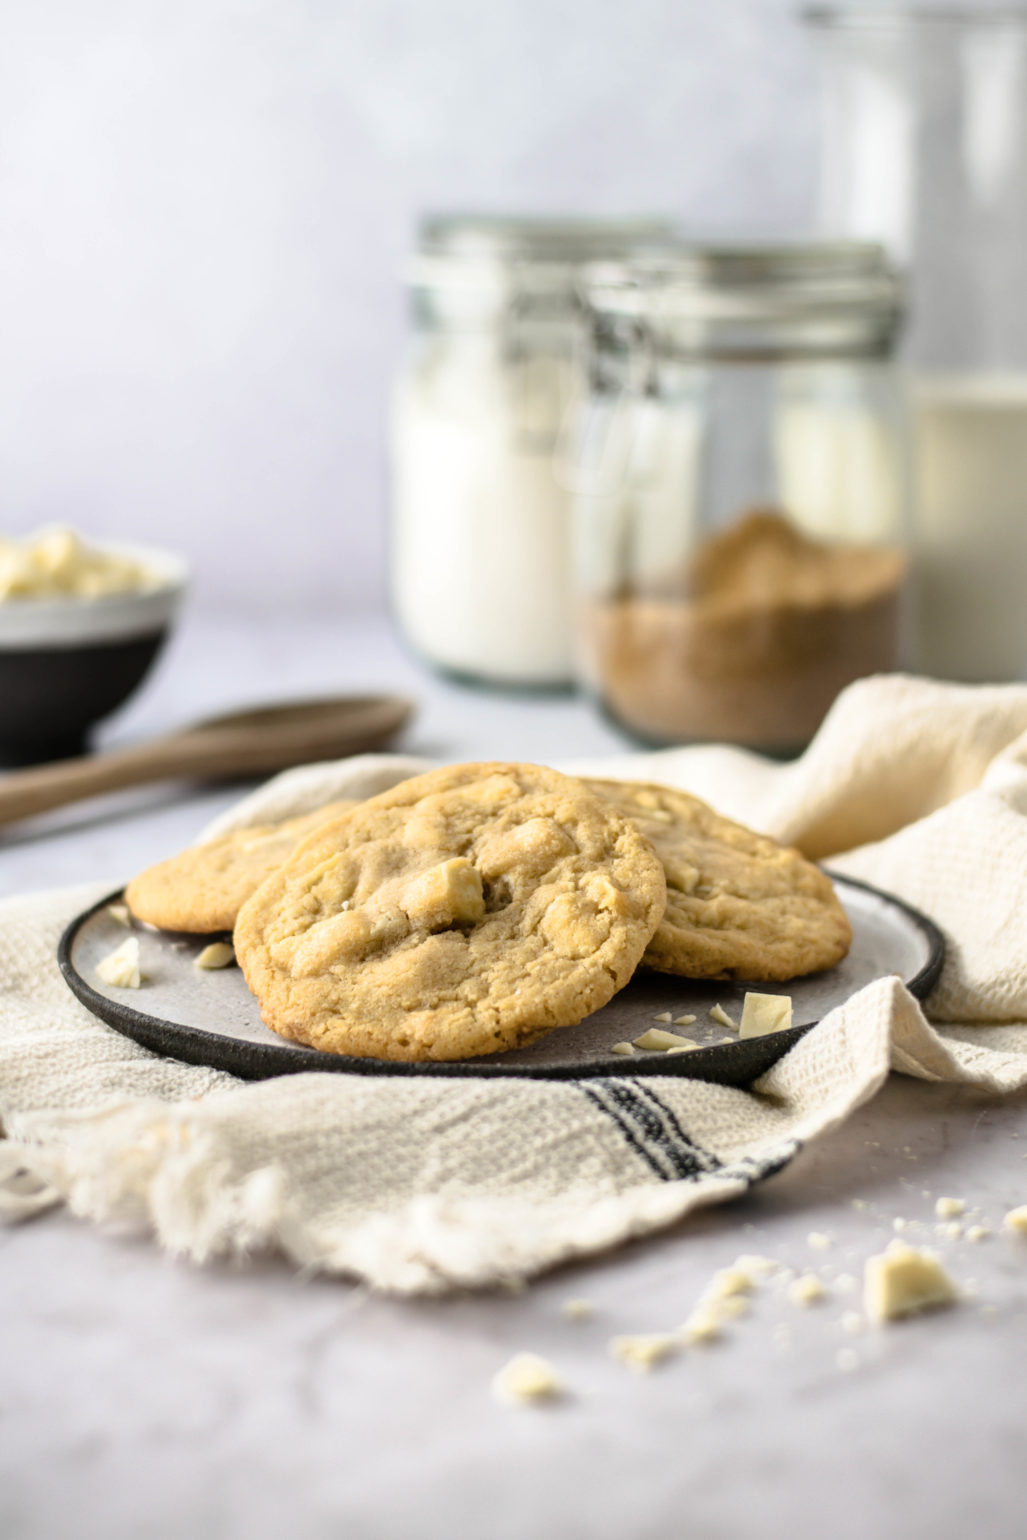 Rezept für weiße Schokoladen Cookies, weiche amerikanische White Chocolate Chip Kekse wie von Subway schnell und einfach selber backen. Super saftig mit cremigen Schokostückchen! #Kekse #Cookies #Subway #Schoko